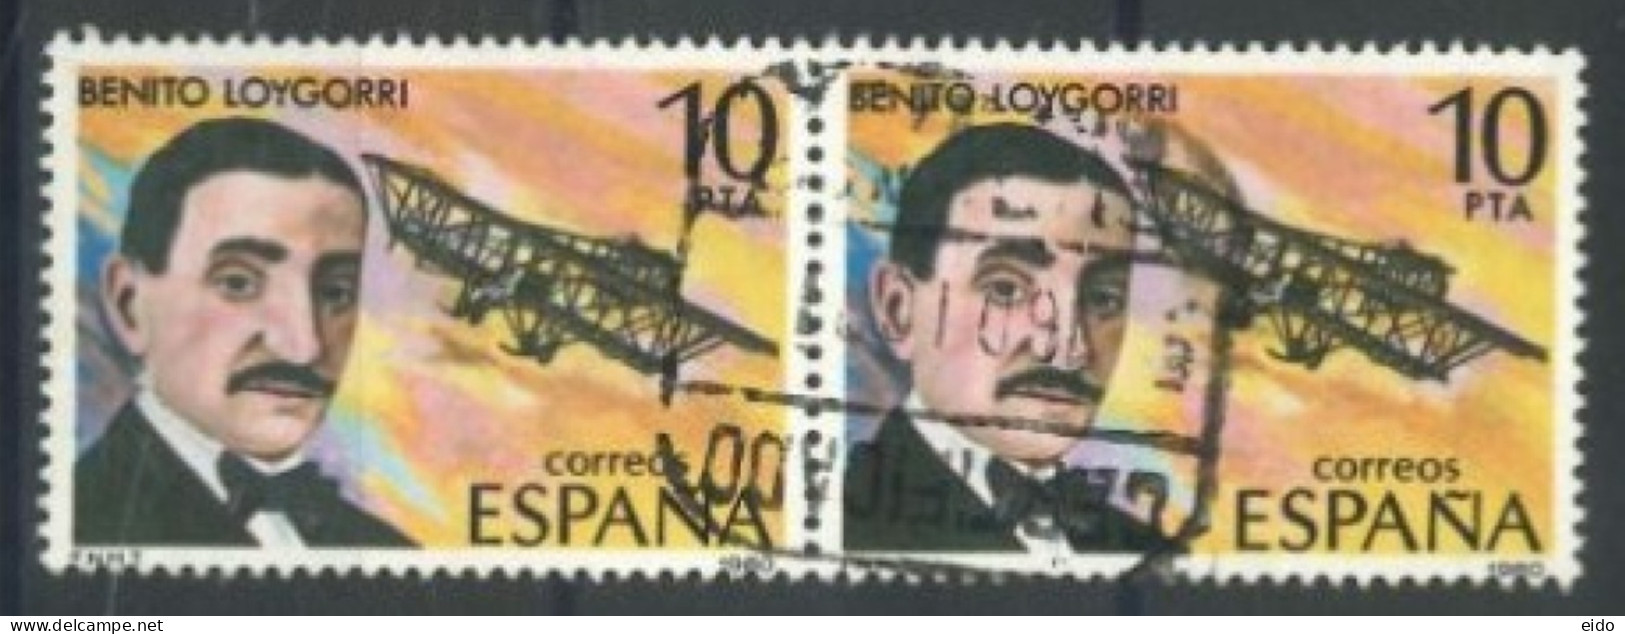 SPAIN, 1980, AVIATION PIONEERS PAIR OF STAMPS, # 2228, USED. - Usados